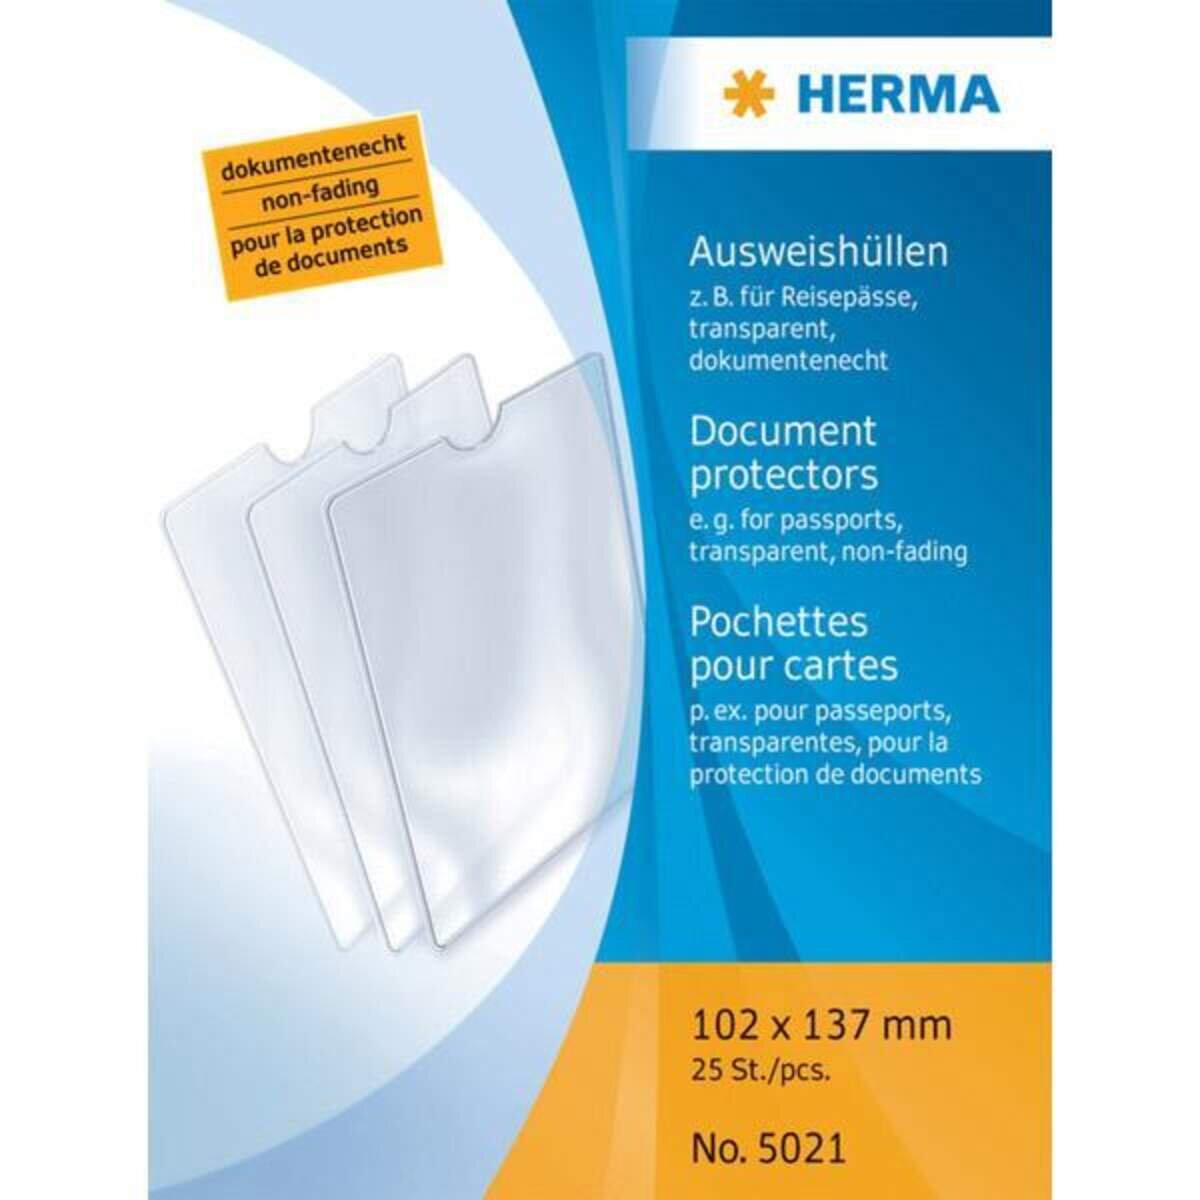 HERMA Ausweishüllen für Reisepässe, 102 x 137mm, 1 Stück